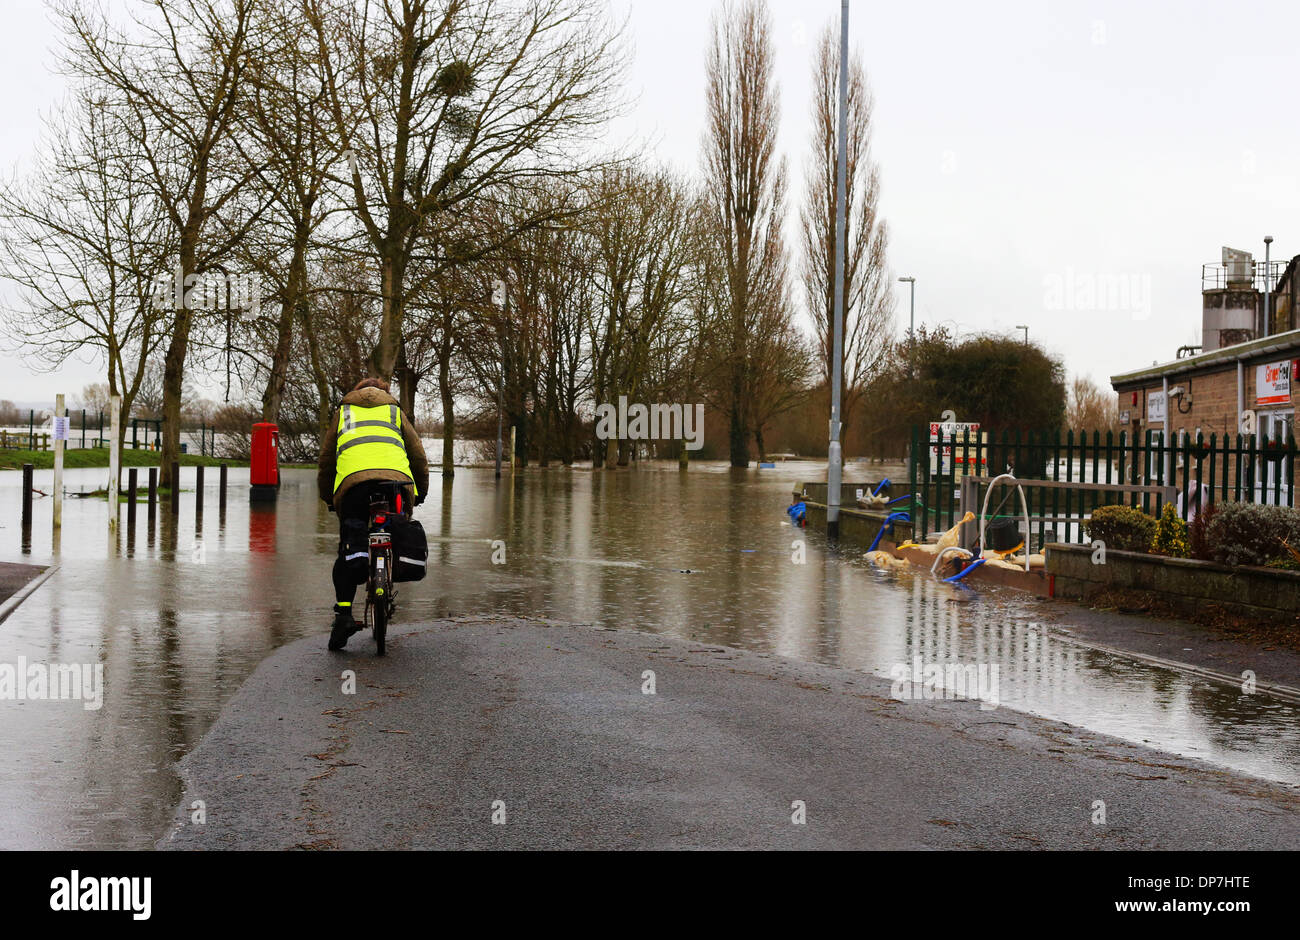 Uomo in bici, in Langport, Sud Ovest Inghilterra, chiedendo come egli sta andando ottenere qualsiasi ulteriore a causa delle inondazioni davanti a lui. Foto Stock